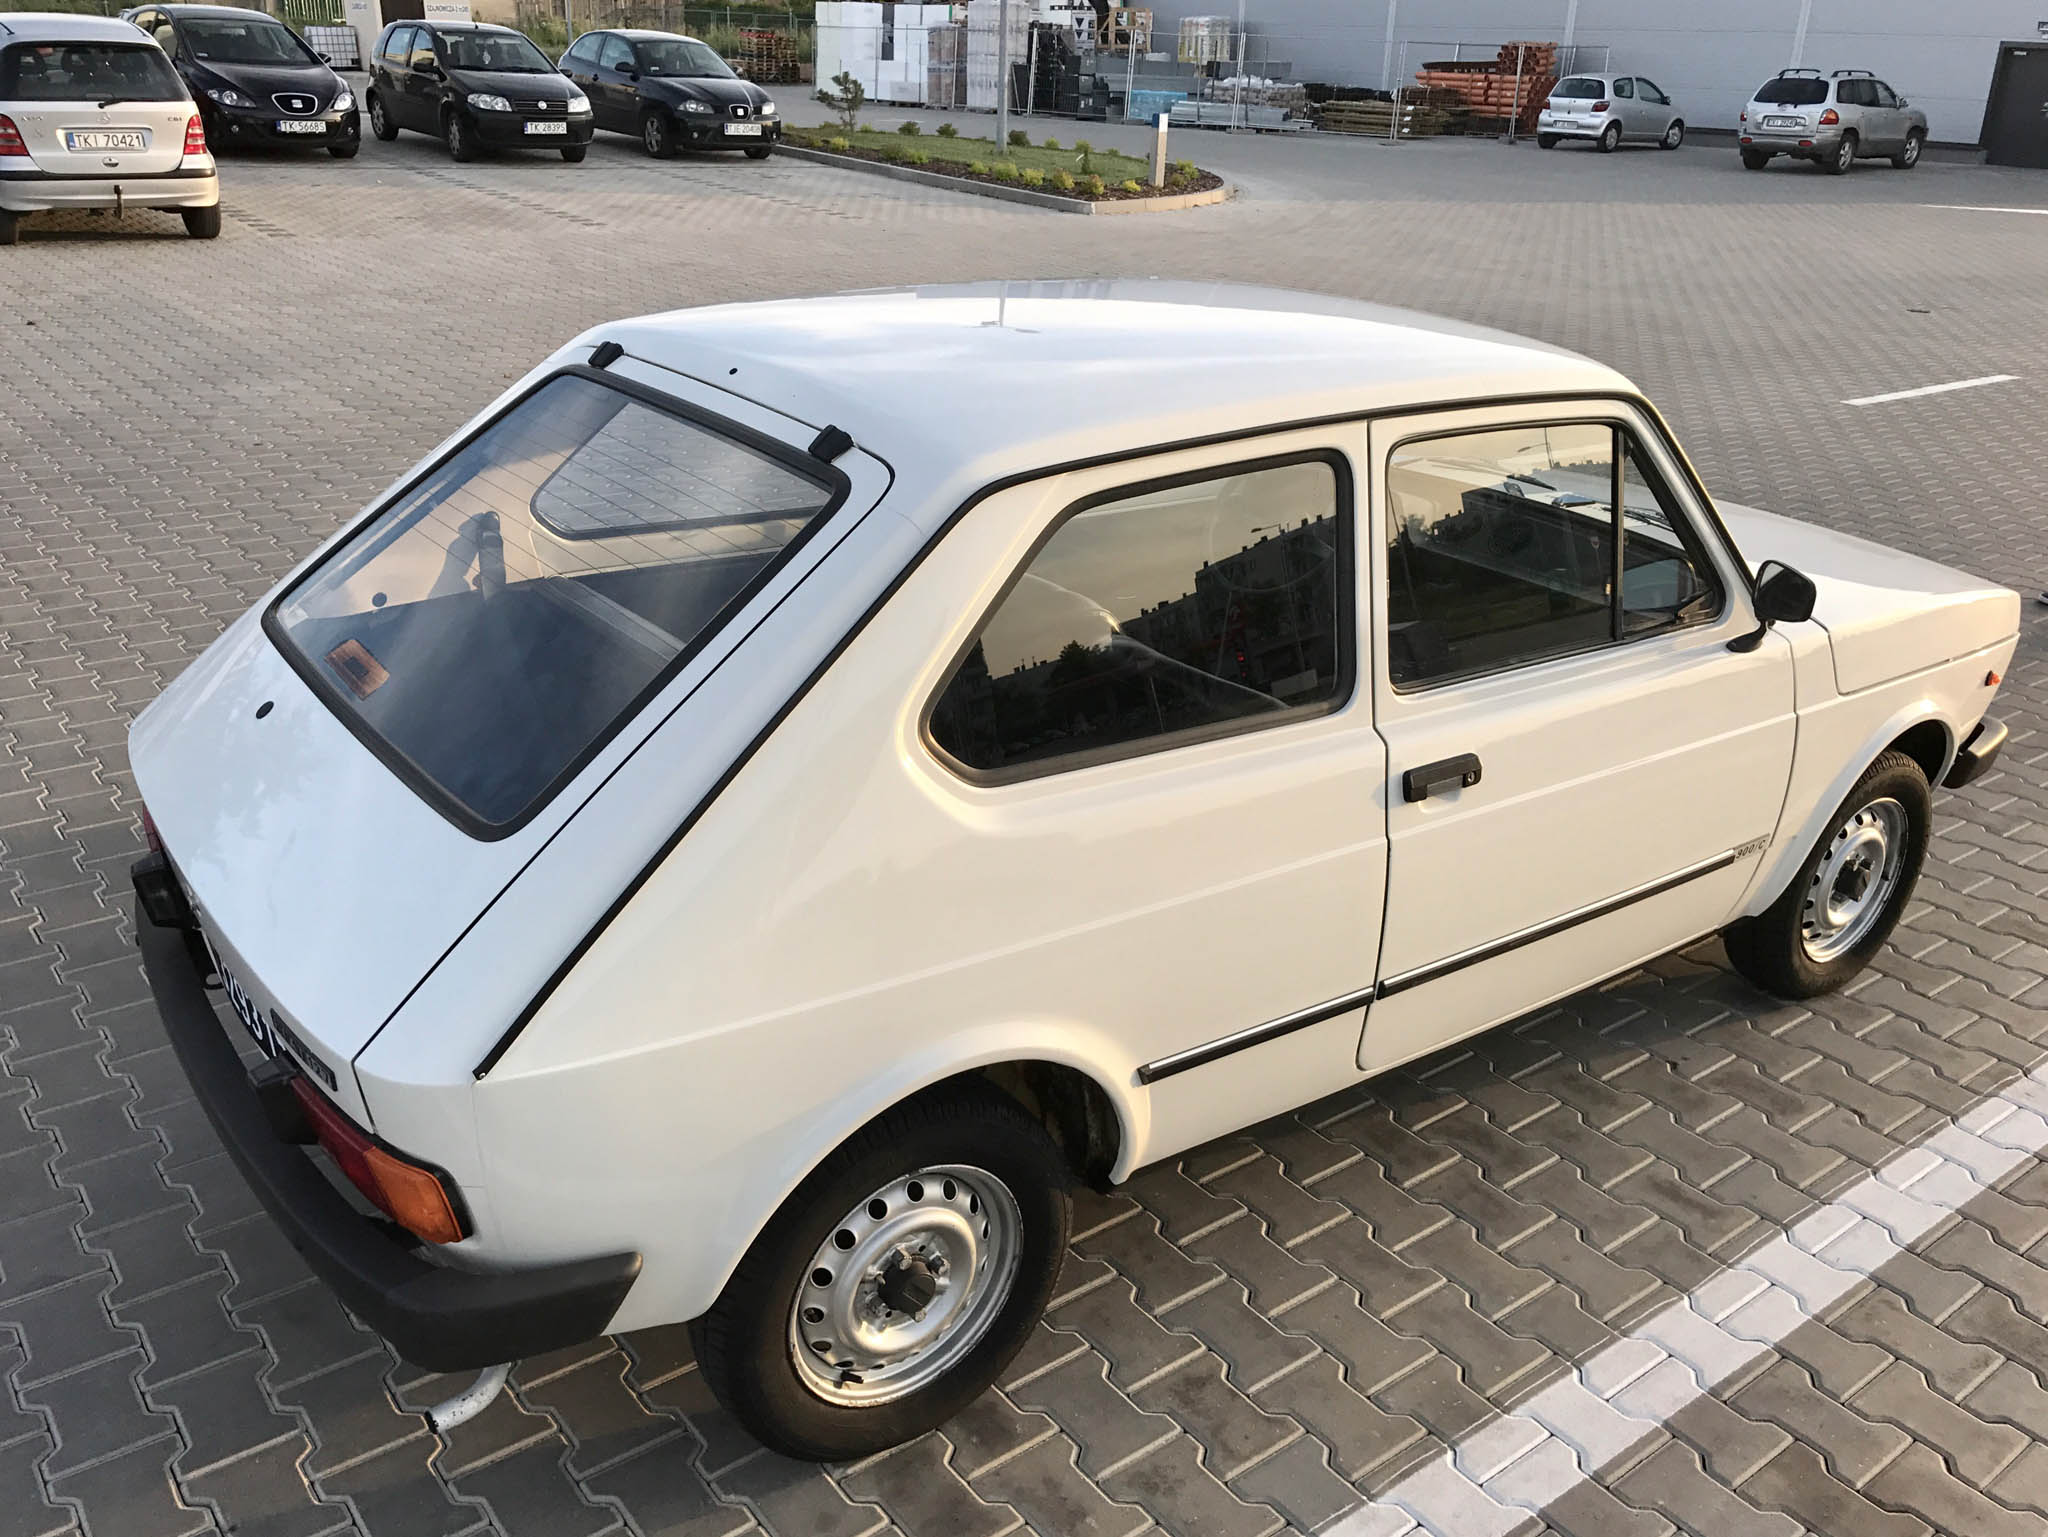 Fiat 127 1980 12900 PLN Kielce Giełda klasyków